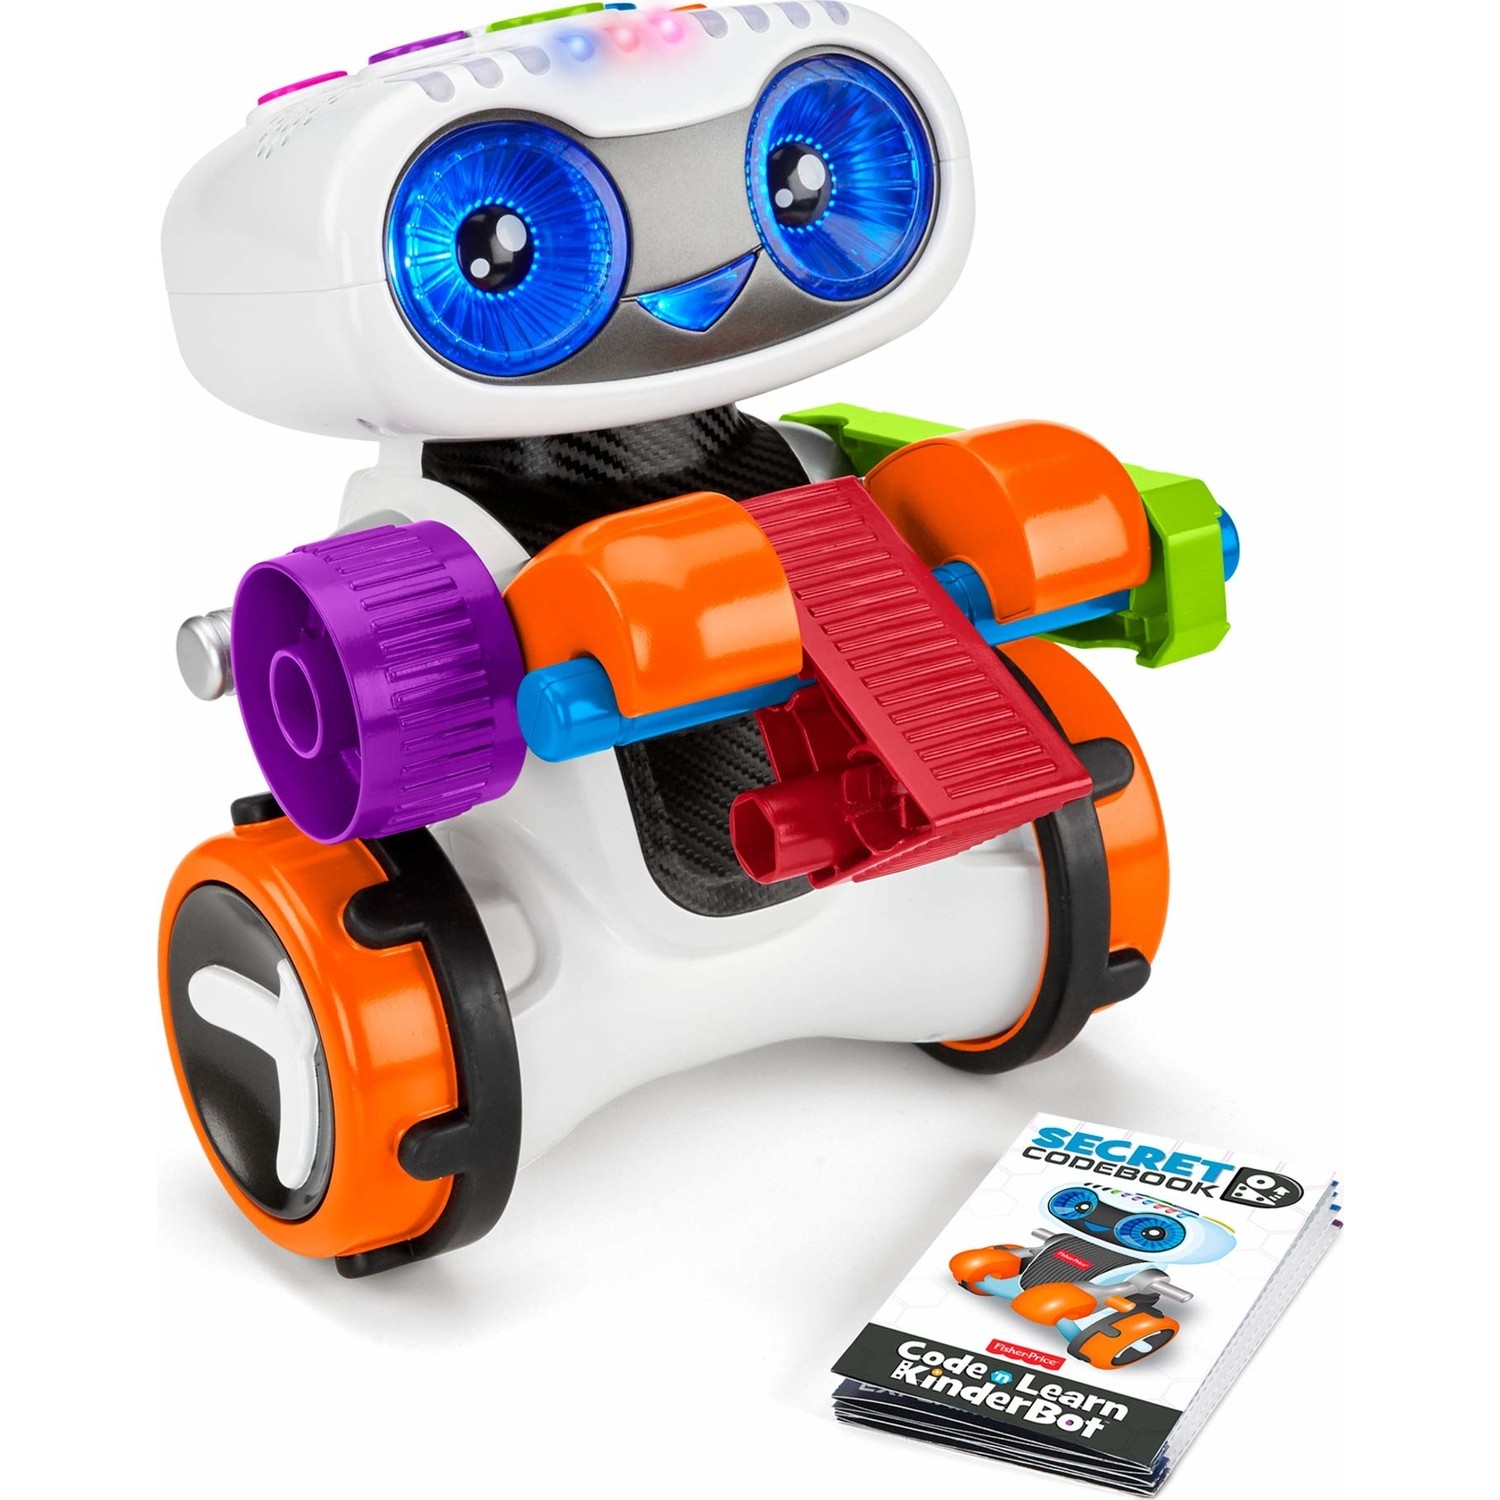 Робот Fisher Price. Робот Моби Fisher-Price. Nuevo bi bot 360 Fisher-Price. Интерактивная развивающая игрушка робот мови купить.